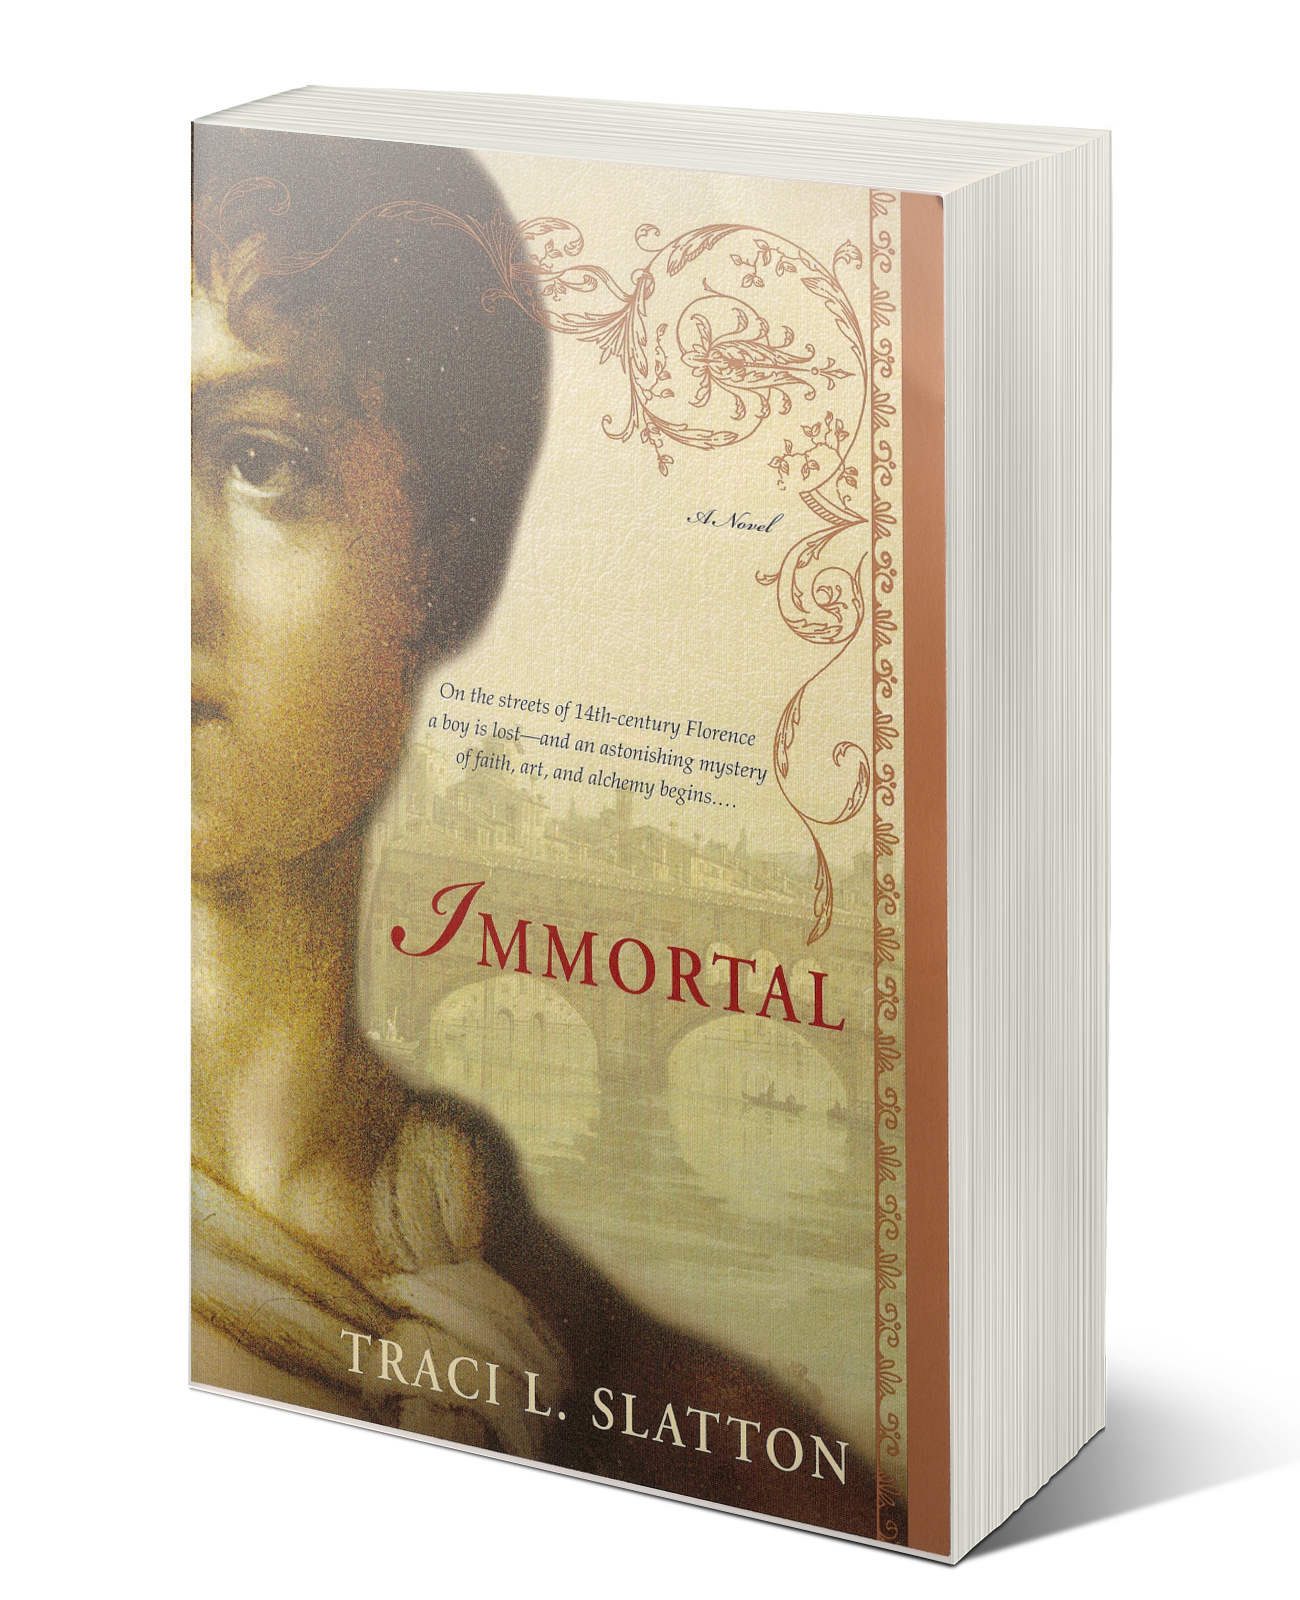 Immortal by Traci L. Slatton